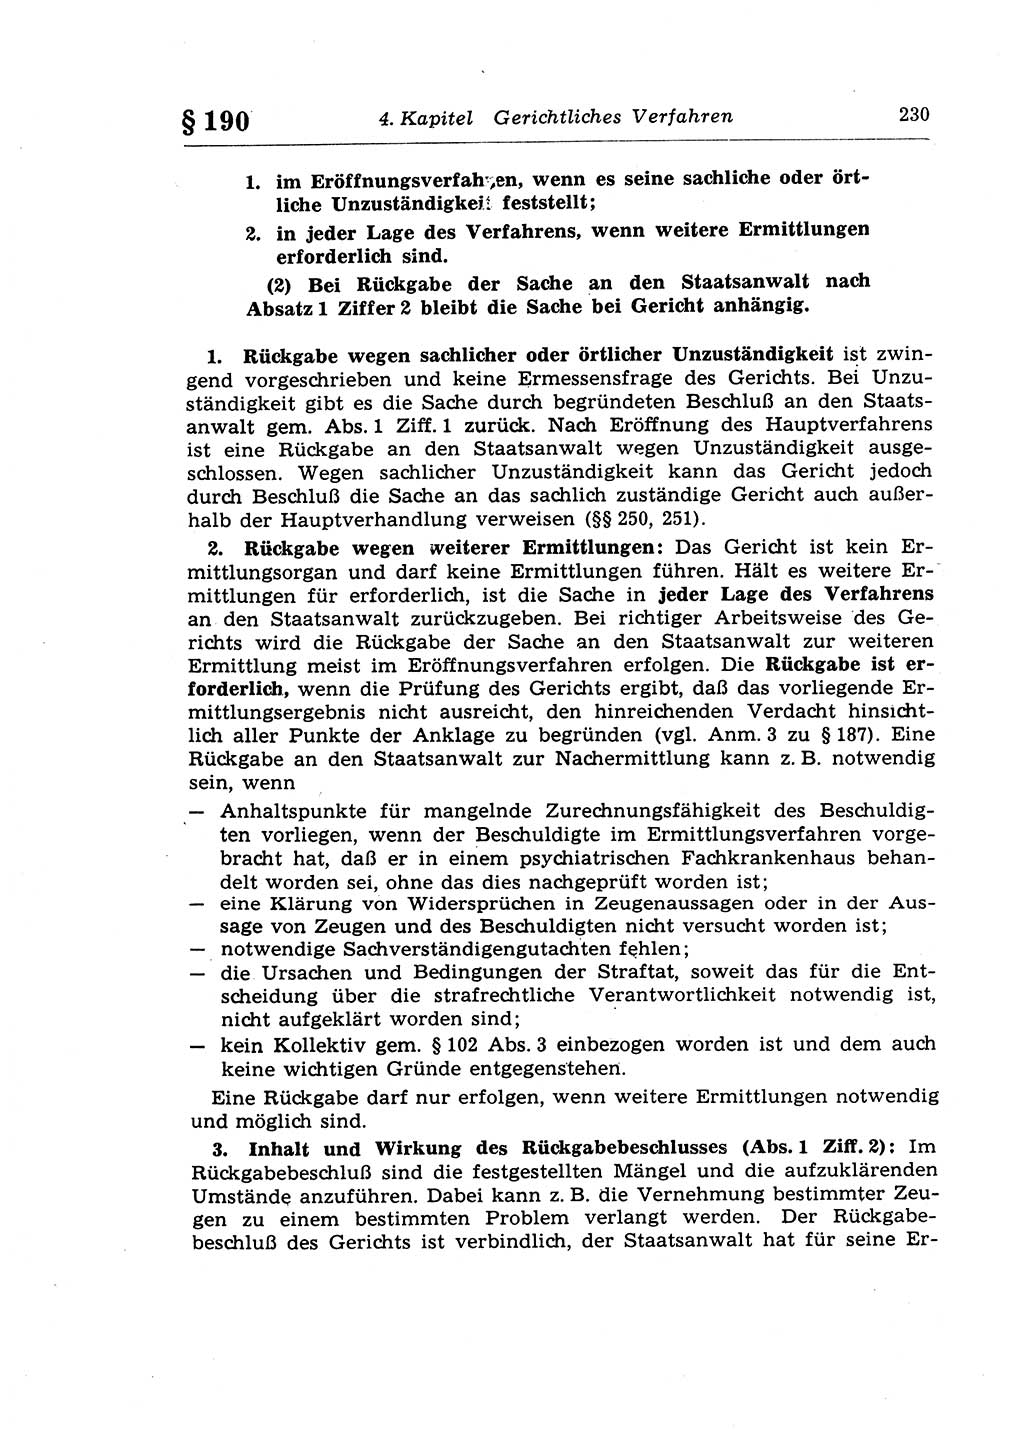 Strafprozeßrecht der DDR (Deutsche Demokratische Republik), Lehrkommentar zur Strafprozeßordnung (StPO) 1968, Seite 230 (Strafprozeßr. DDR Lehrkomm. StPO 19688, S. 230)